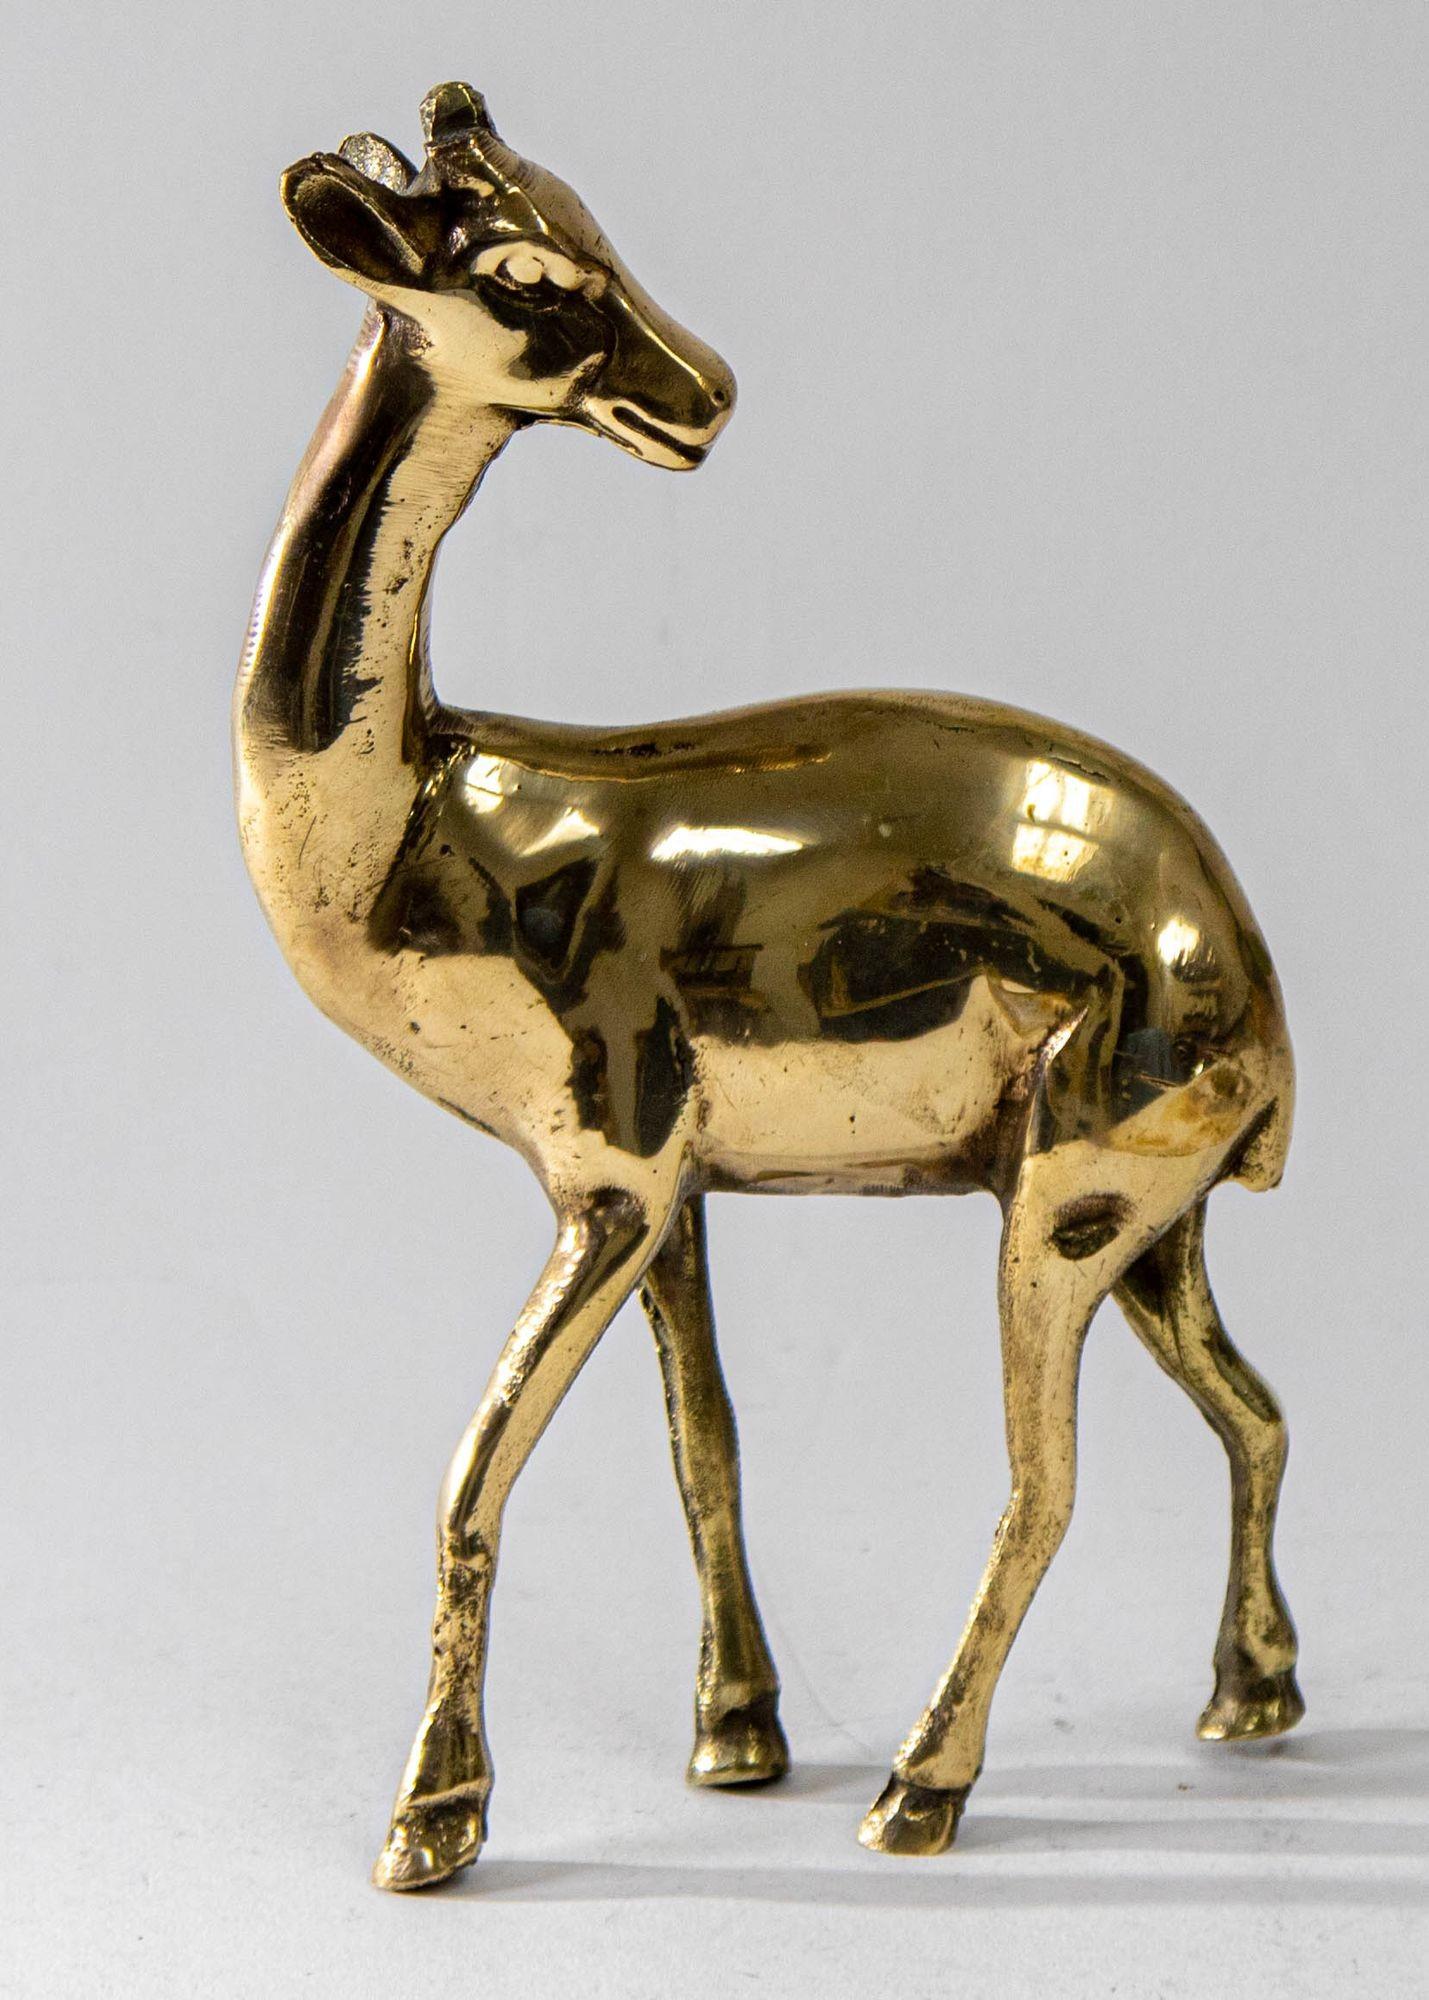 1950s Vintage Solid Polished Brass Gazelle Deer Figurine Sculpture 4